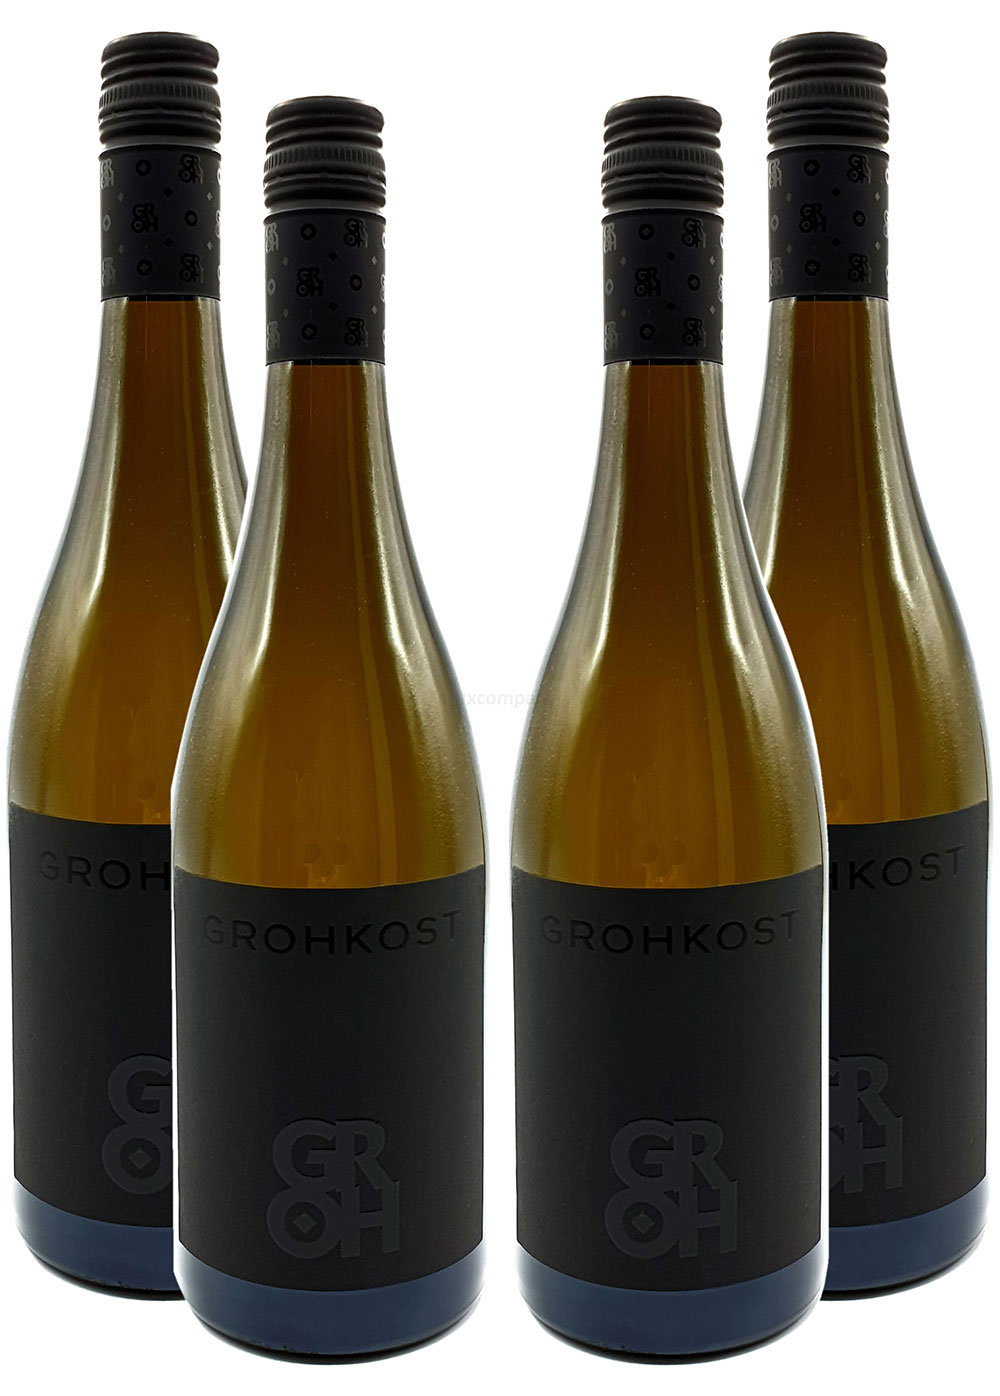 Groh - 4er Set Grohkost Weissburgunder Trocken - Deutscher Qualitätswein 0,75L (14,0% Vol) -[Enthält Sulfite]